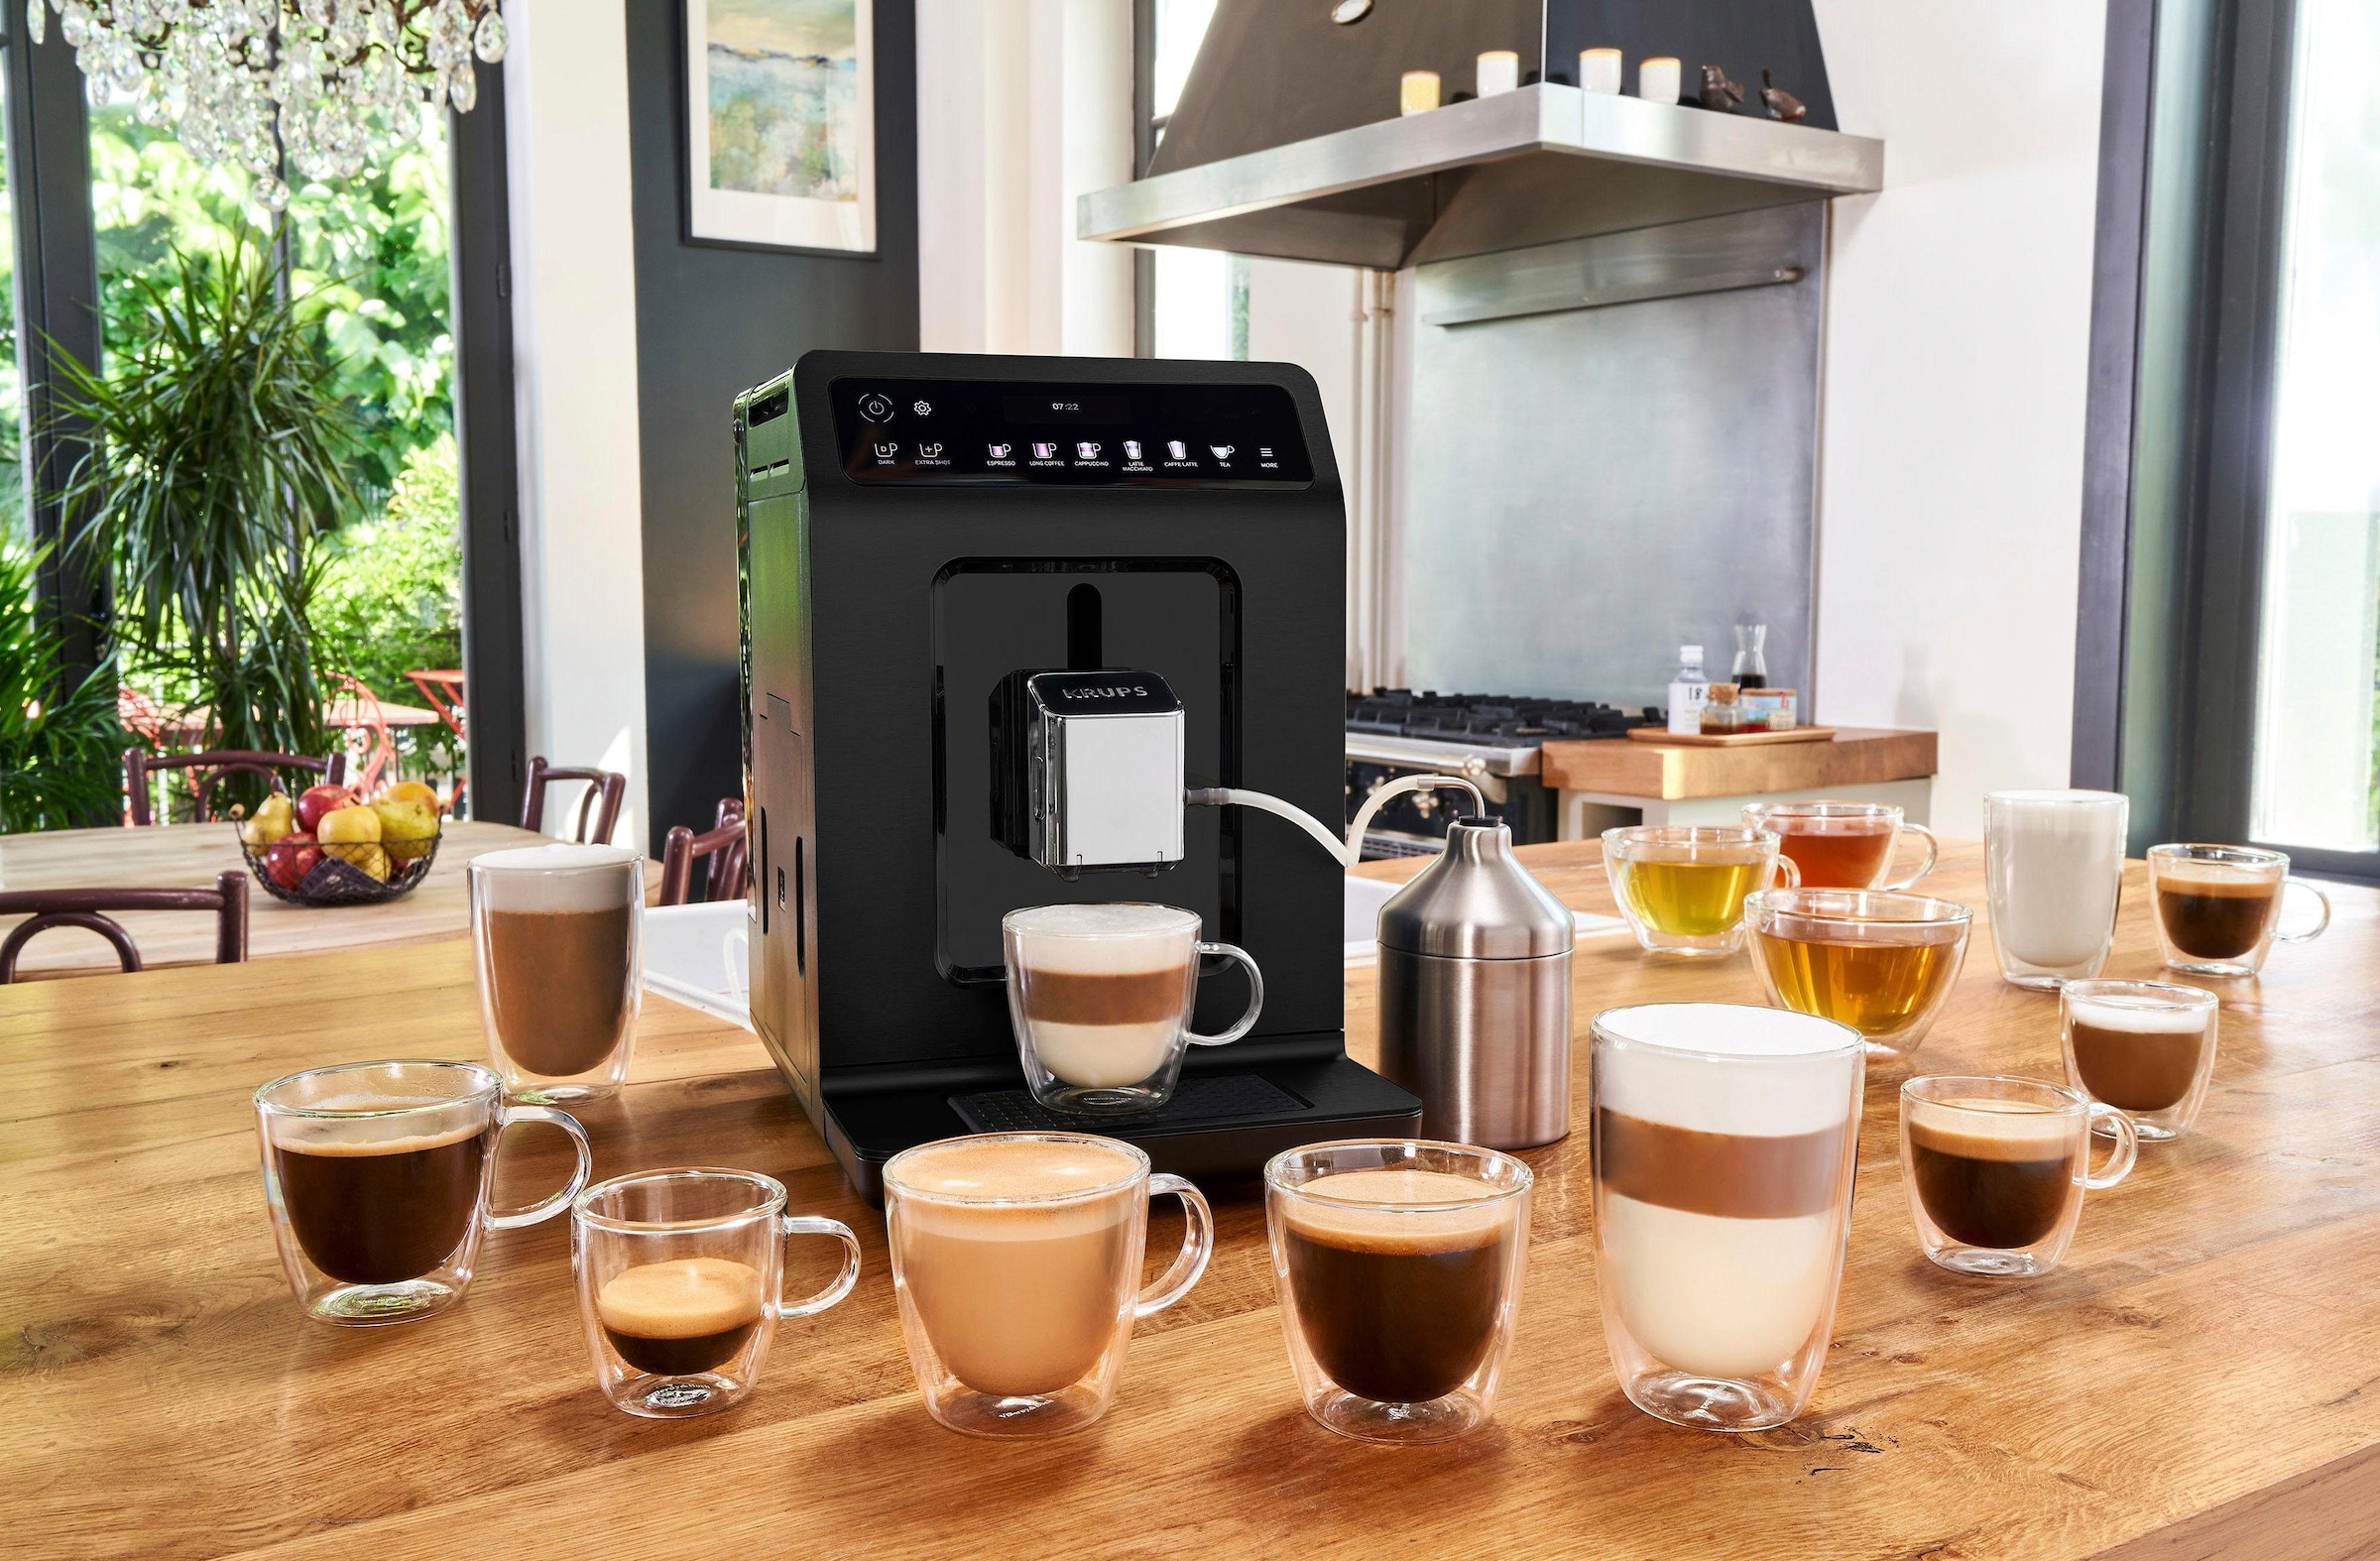 Krups Kaffeevollautomat »EA8948 Evidence Plus, XXL vielfältige innovativem dank Jahren Garantie 3 auf einfache Bedienung Knopfdruck«, Farbdisplay mit Kaffee-Spezialitäten